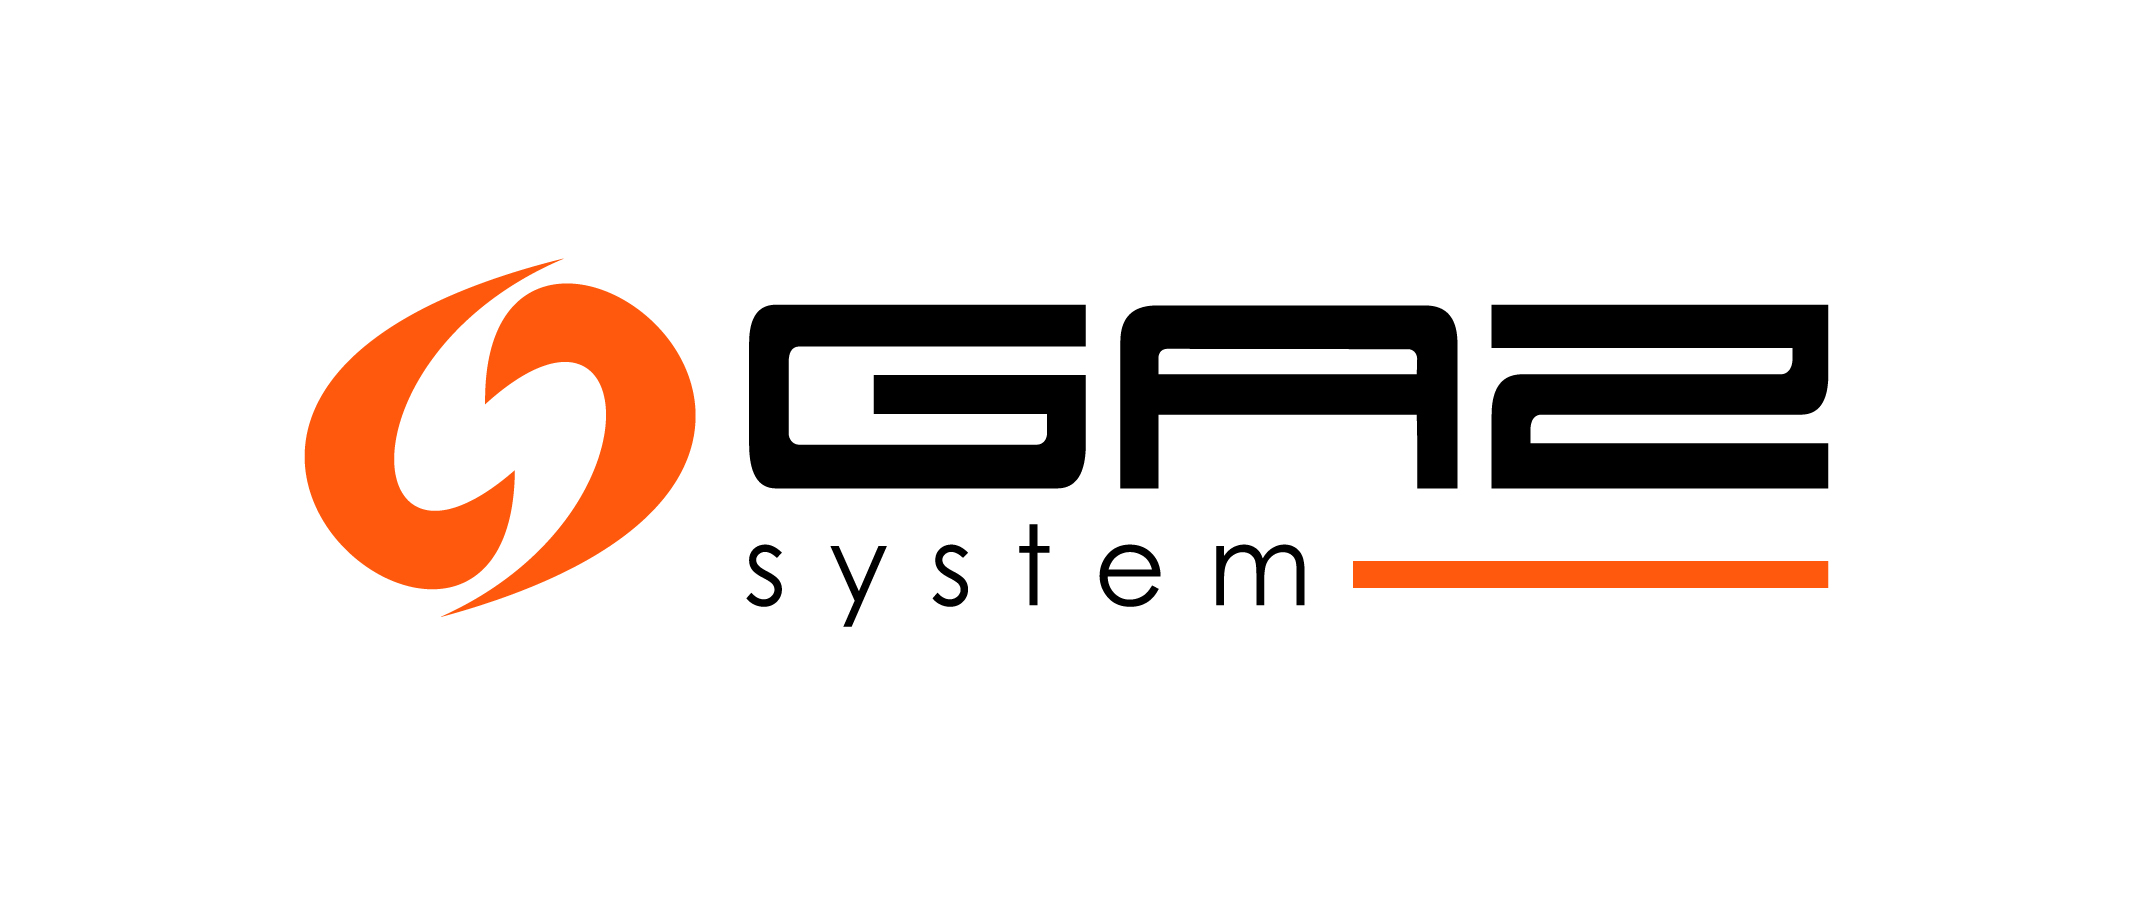 Znalezione obrazy dla zapytania gaz system logo